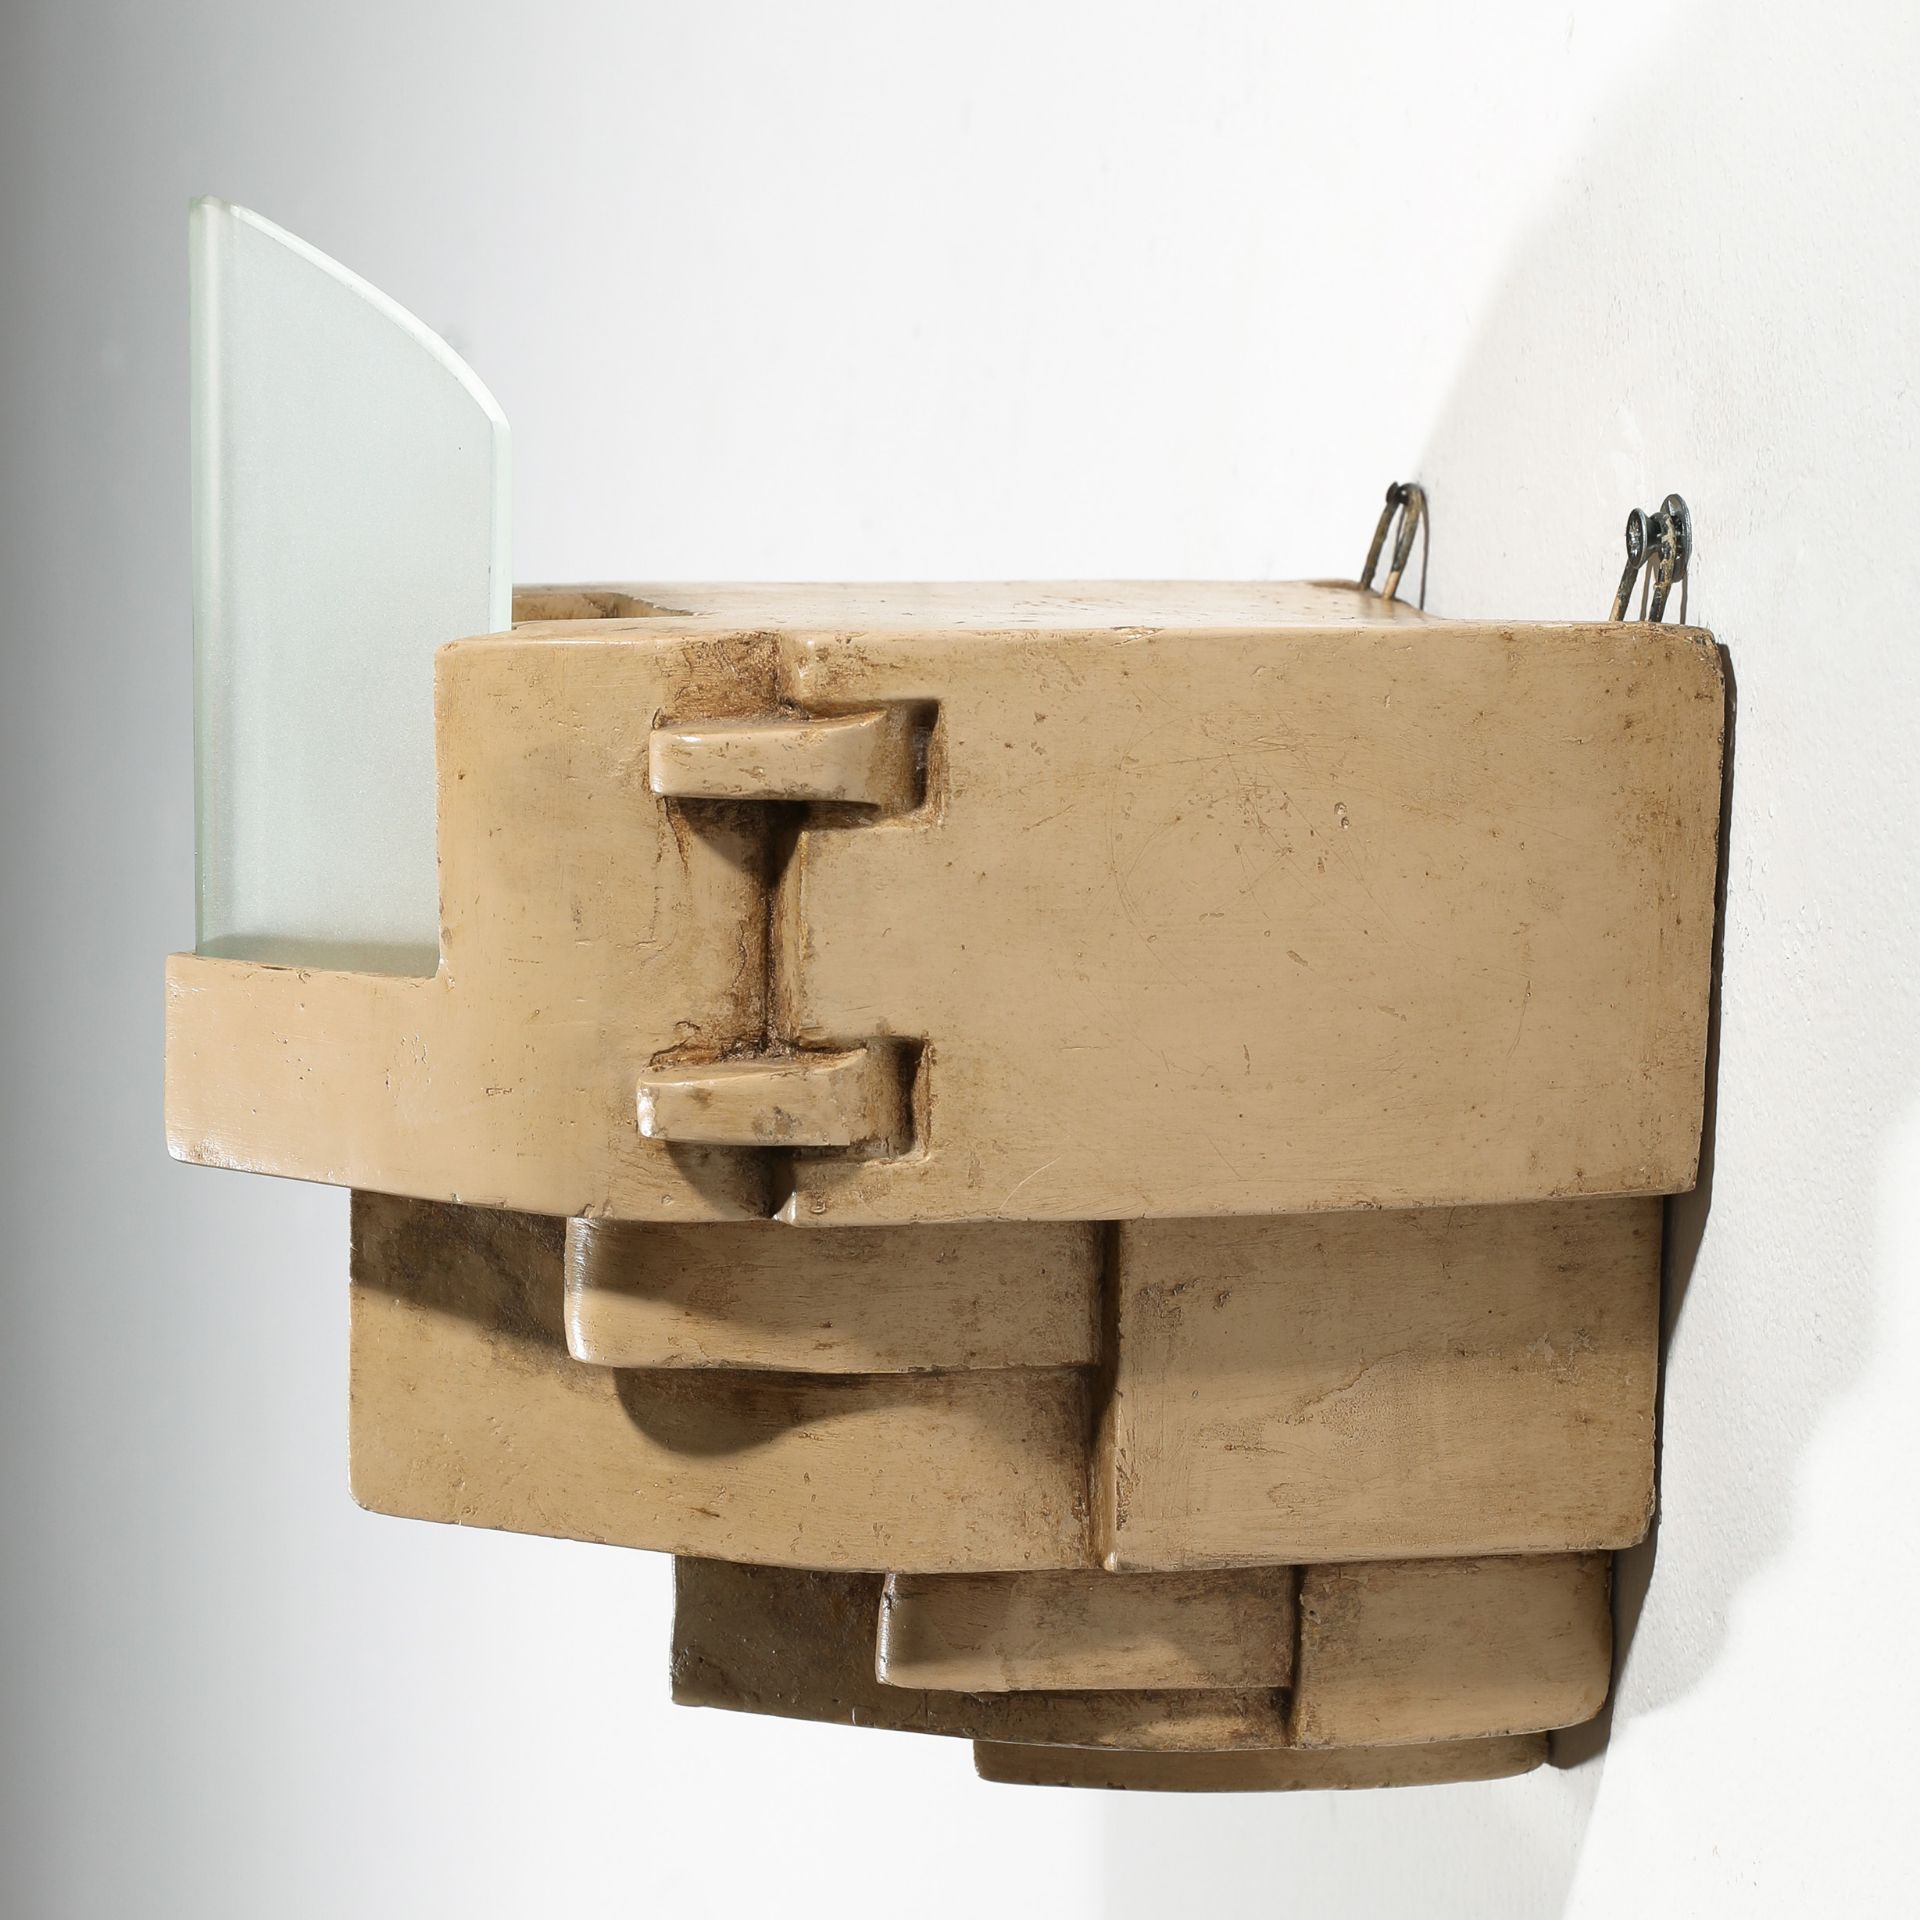 Jac. van Vlijmen, Prototype of an Art Deco wall lamp - Image 3 of 6